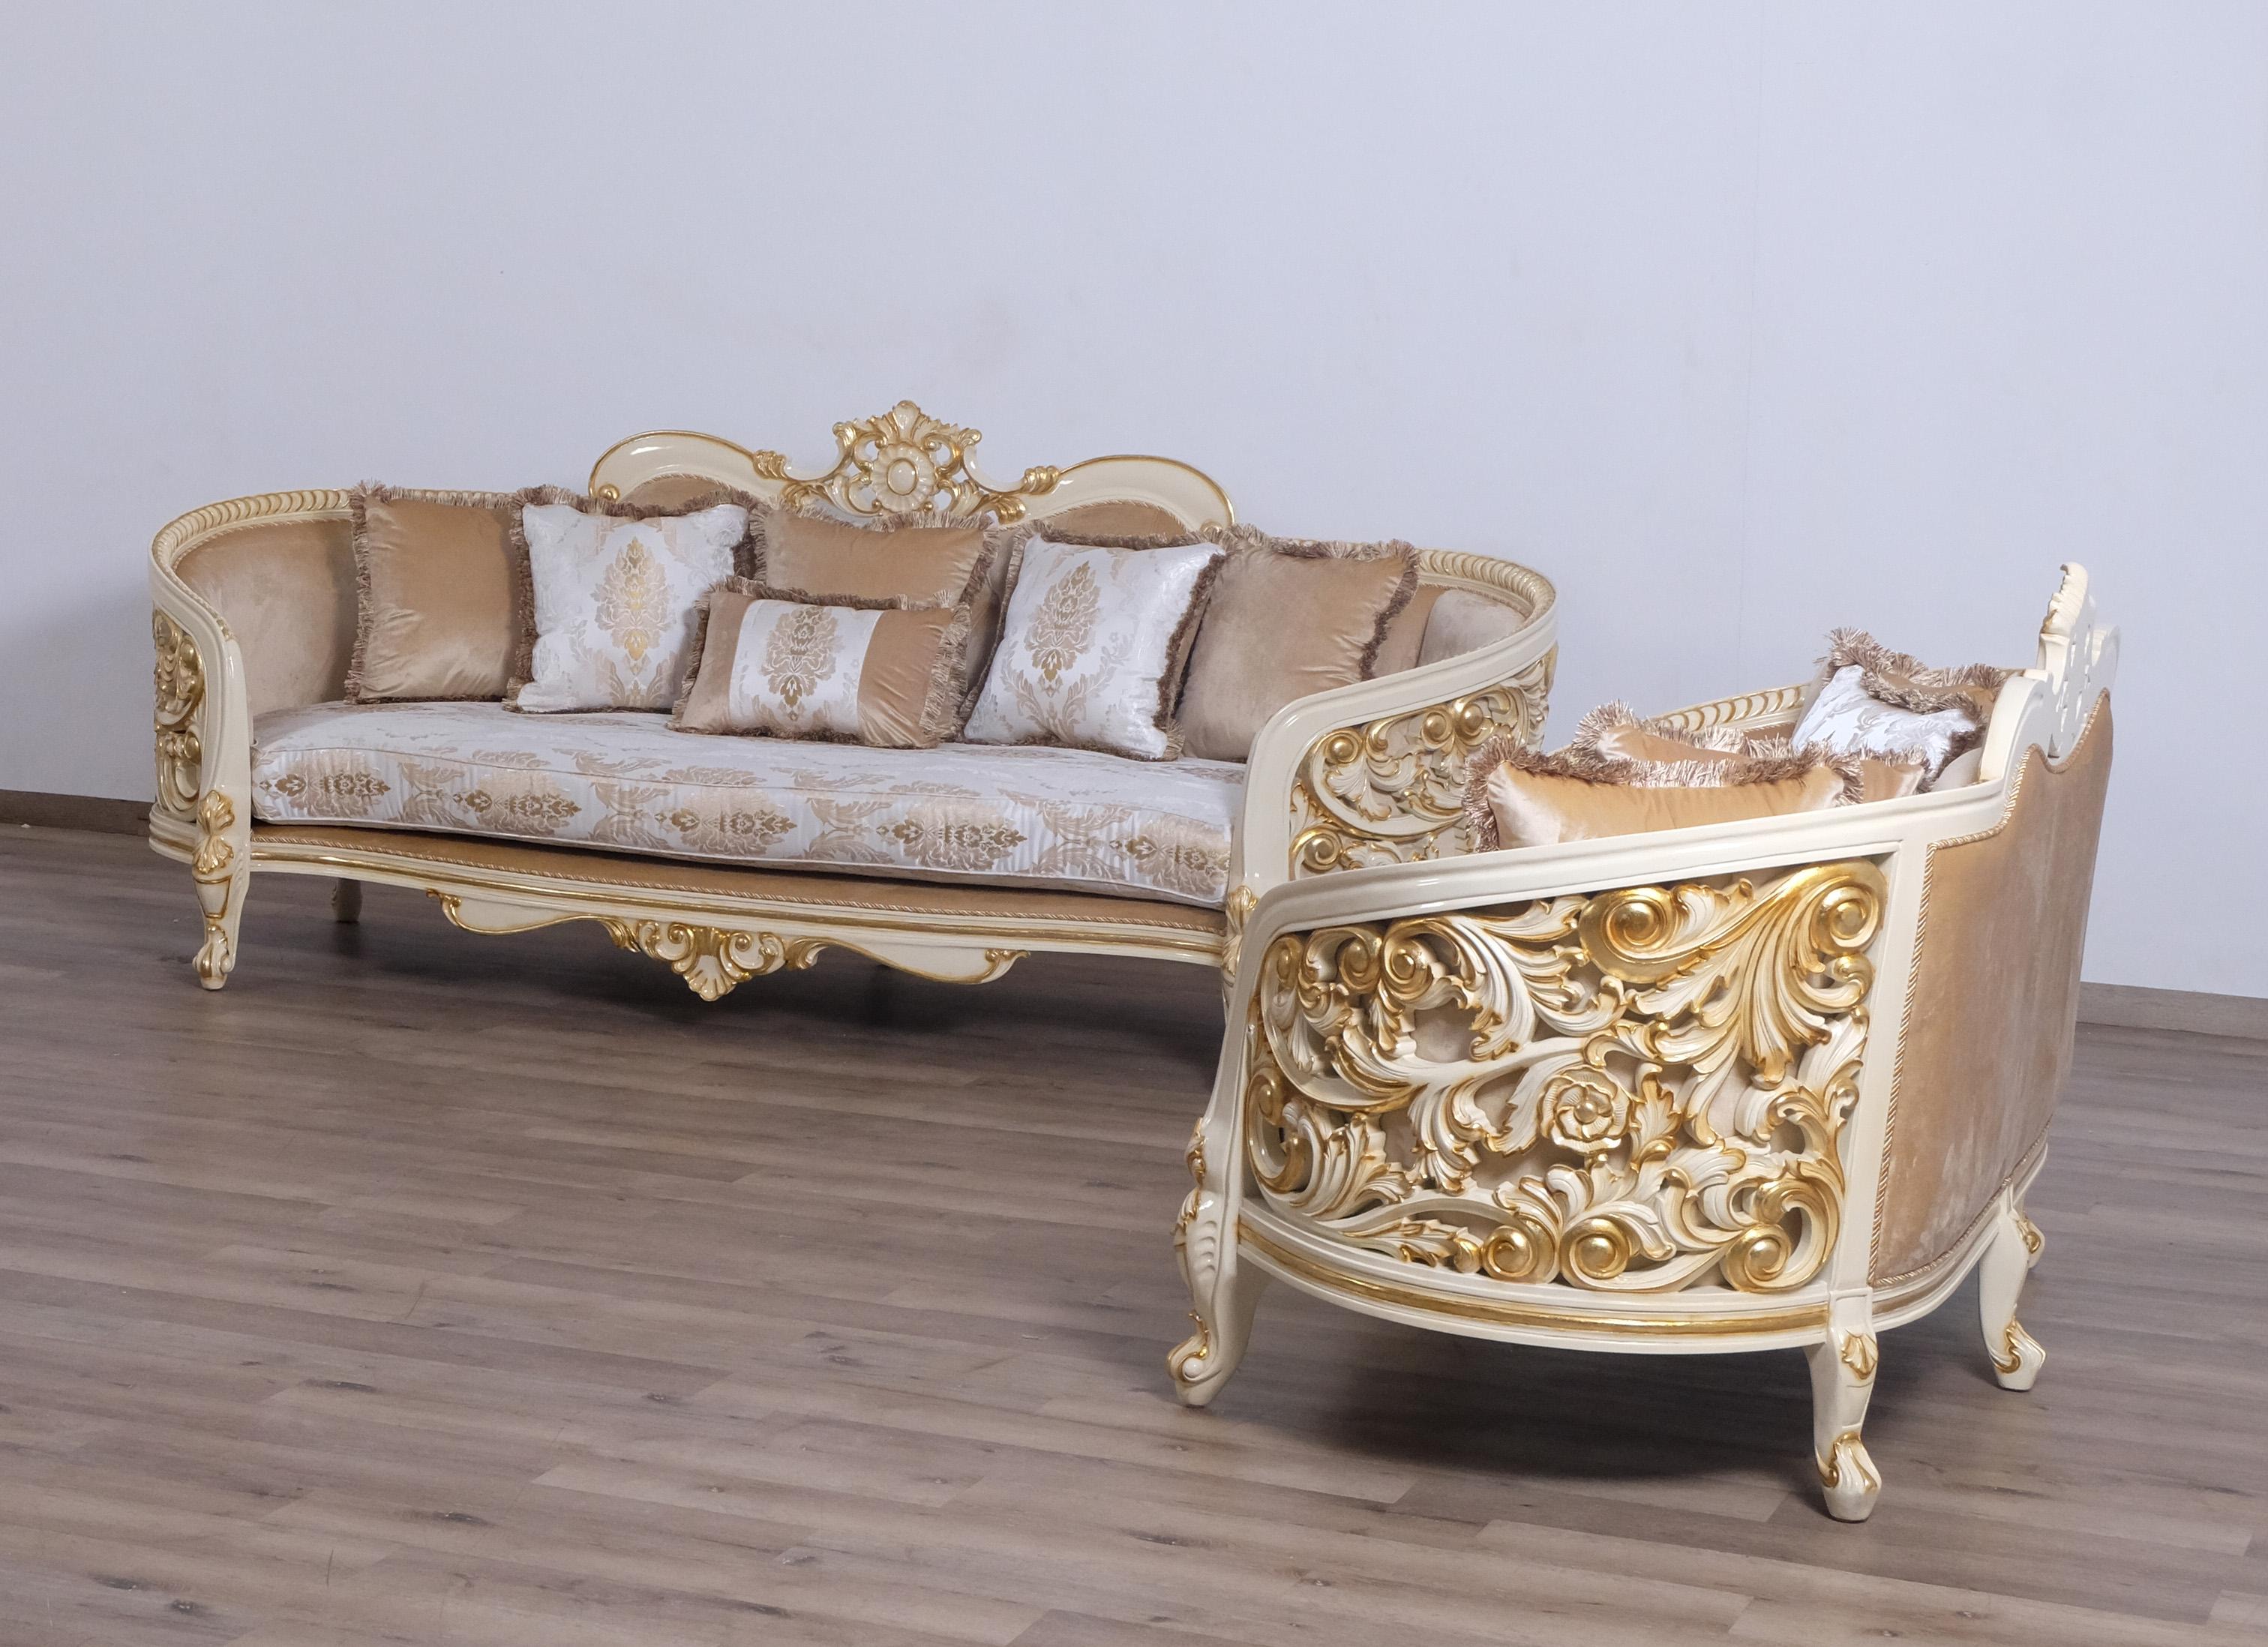 Classic, Traditional Sofa Set BELLAGIO 30017-Set-2 in Antique, Gold, Beige Fabric